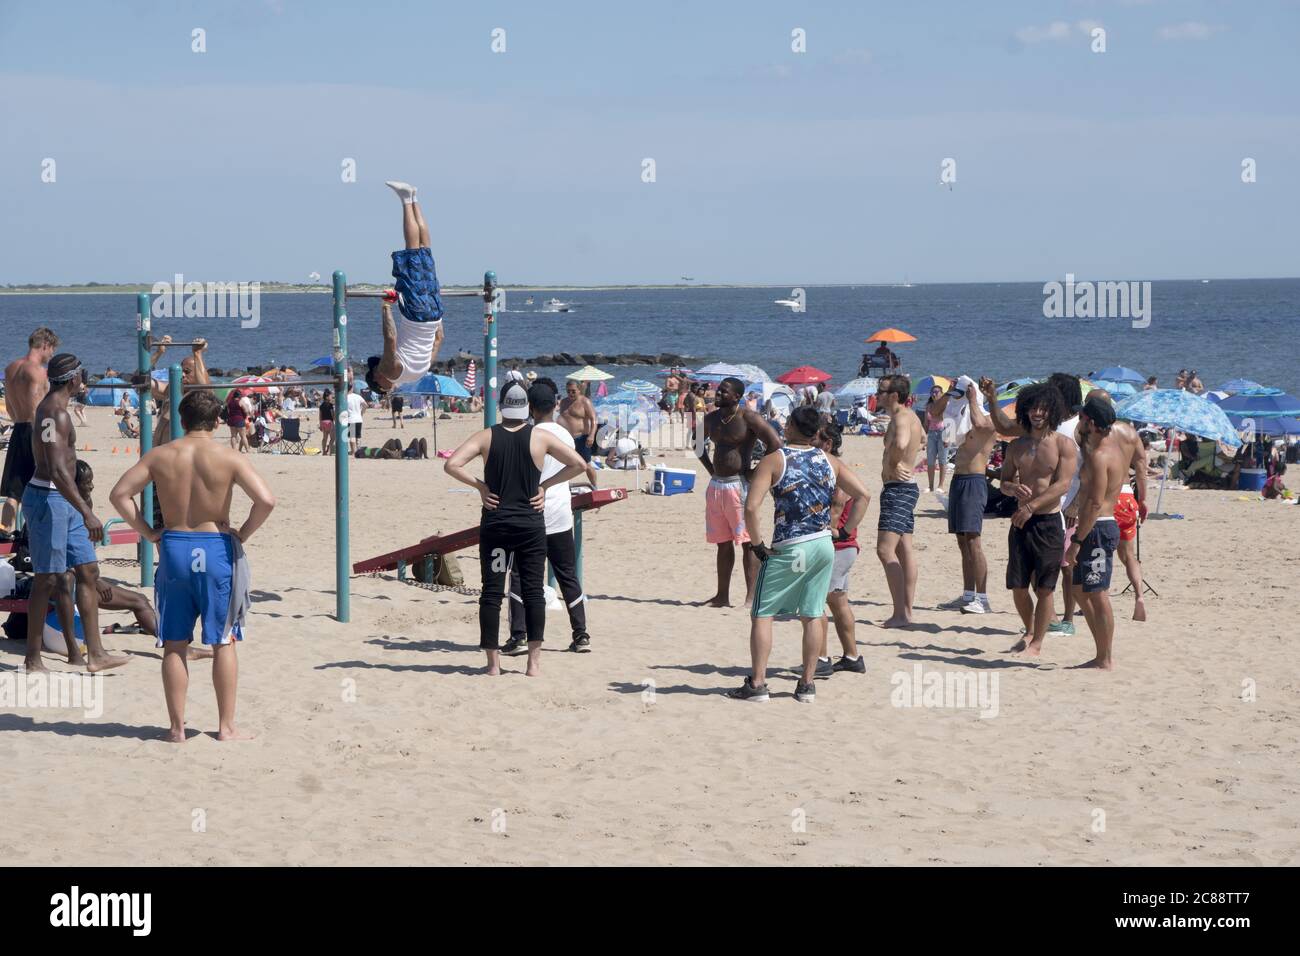 Junge Musclemen trainieren und beobachten andere am Strand von Coney Island während der Covid-19 Pandemie. Die meisten tragen keine Masken oder sorgen sich um soziale Distanzierung. Stockfoto